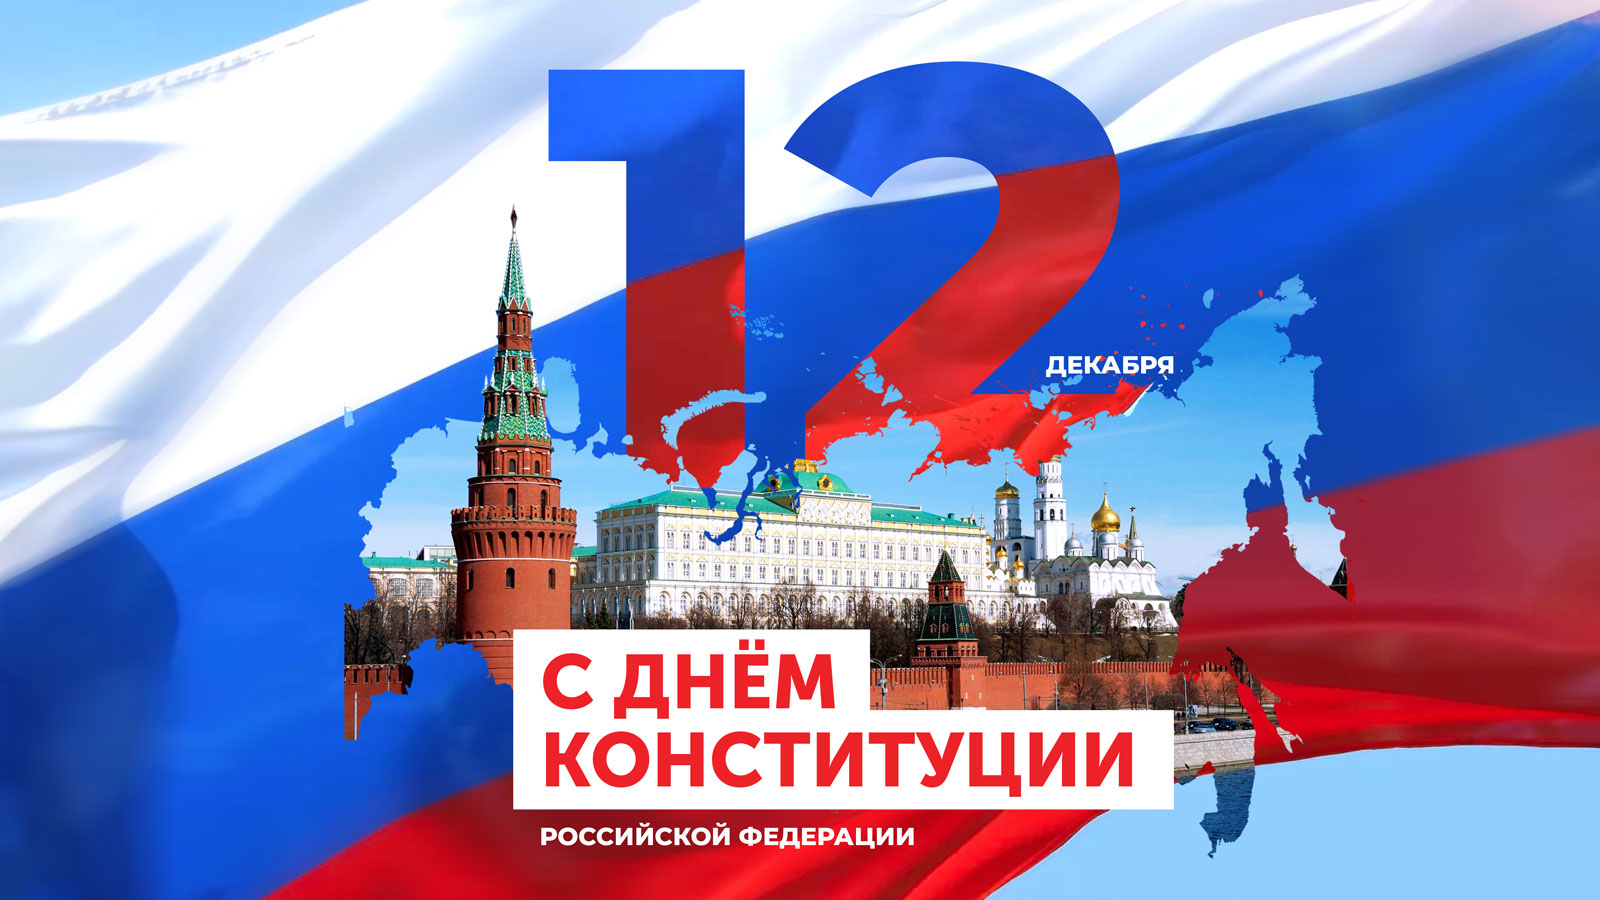 12 декабря - День Конституции Российской Федерации.